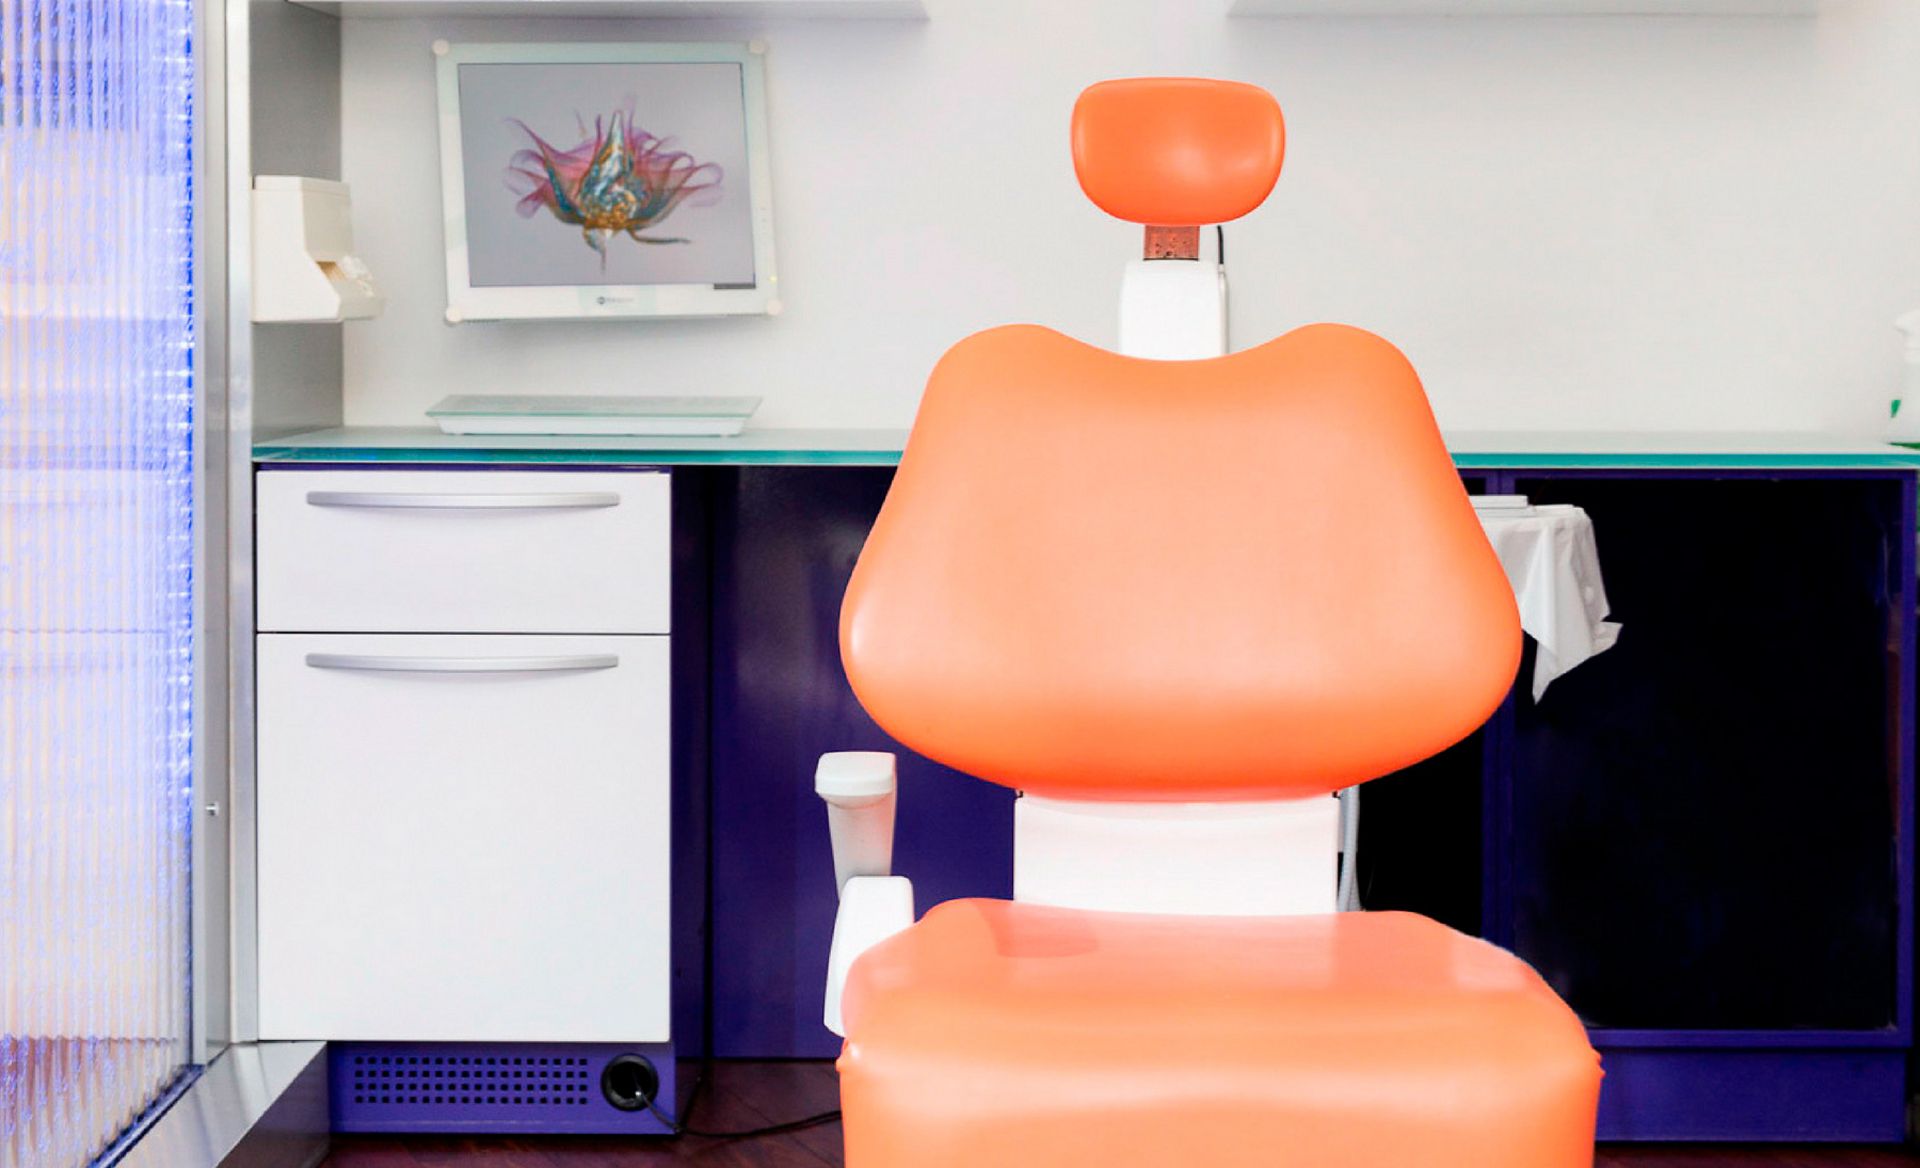 fauteuil pour traitement dentaire du cabinet du sourire, dentiste paris 16ème